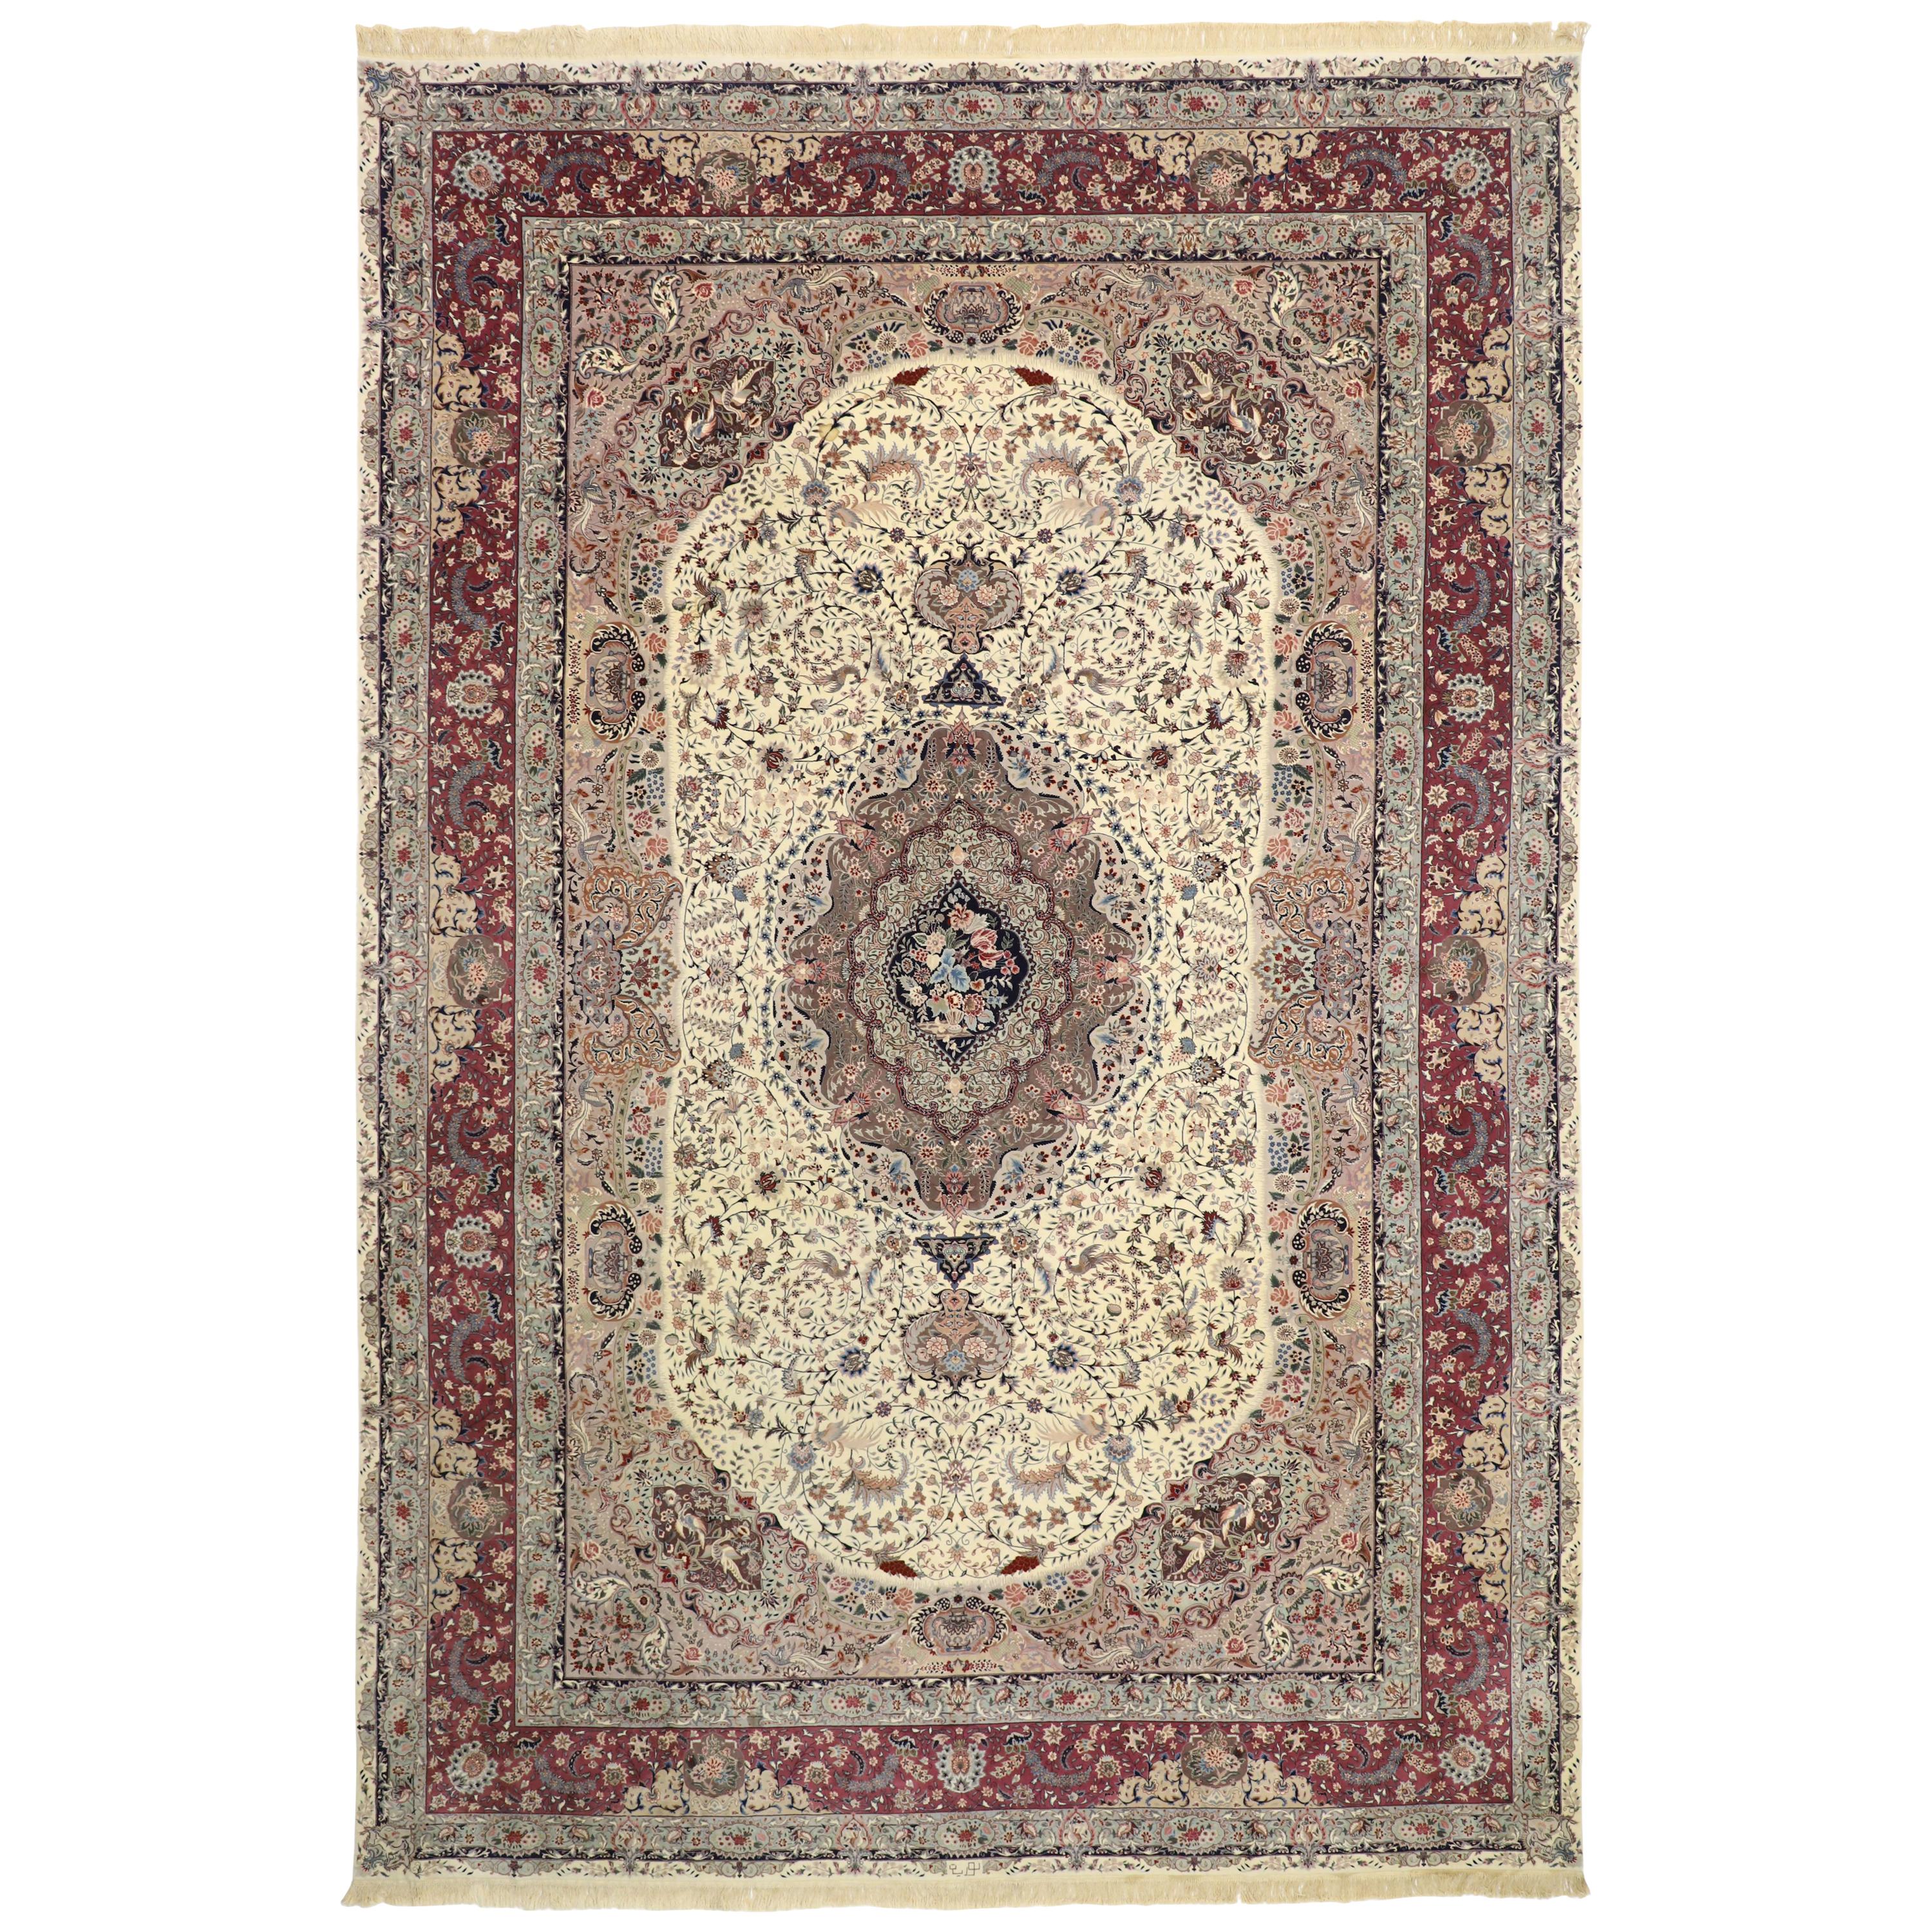 Oversized Antique Persian Tabriz Rug, Bridgerton Style Meets Rococo